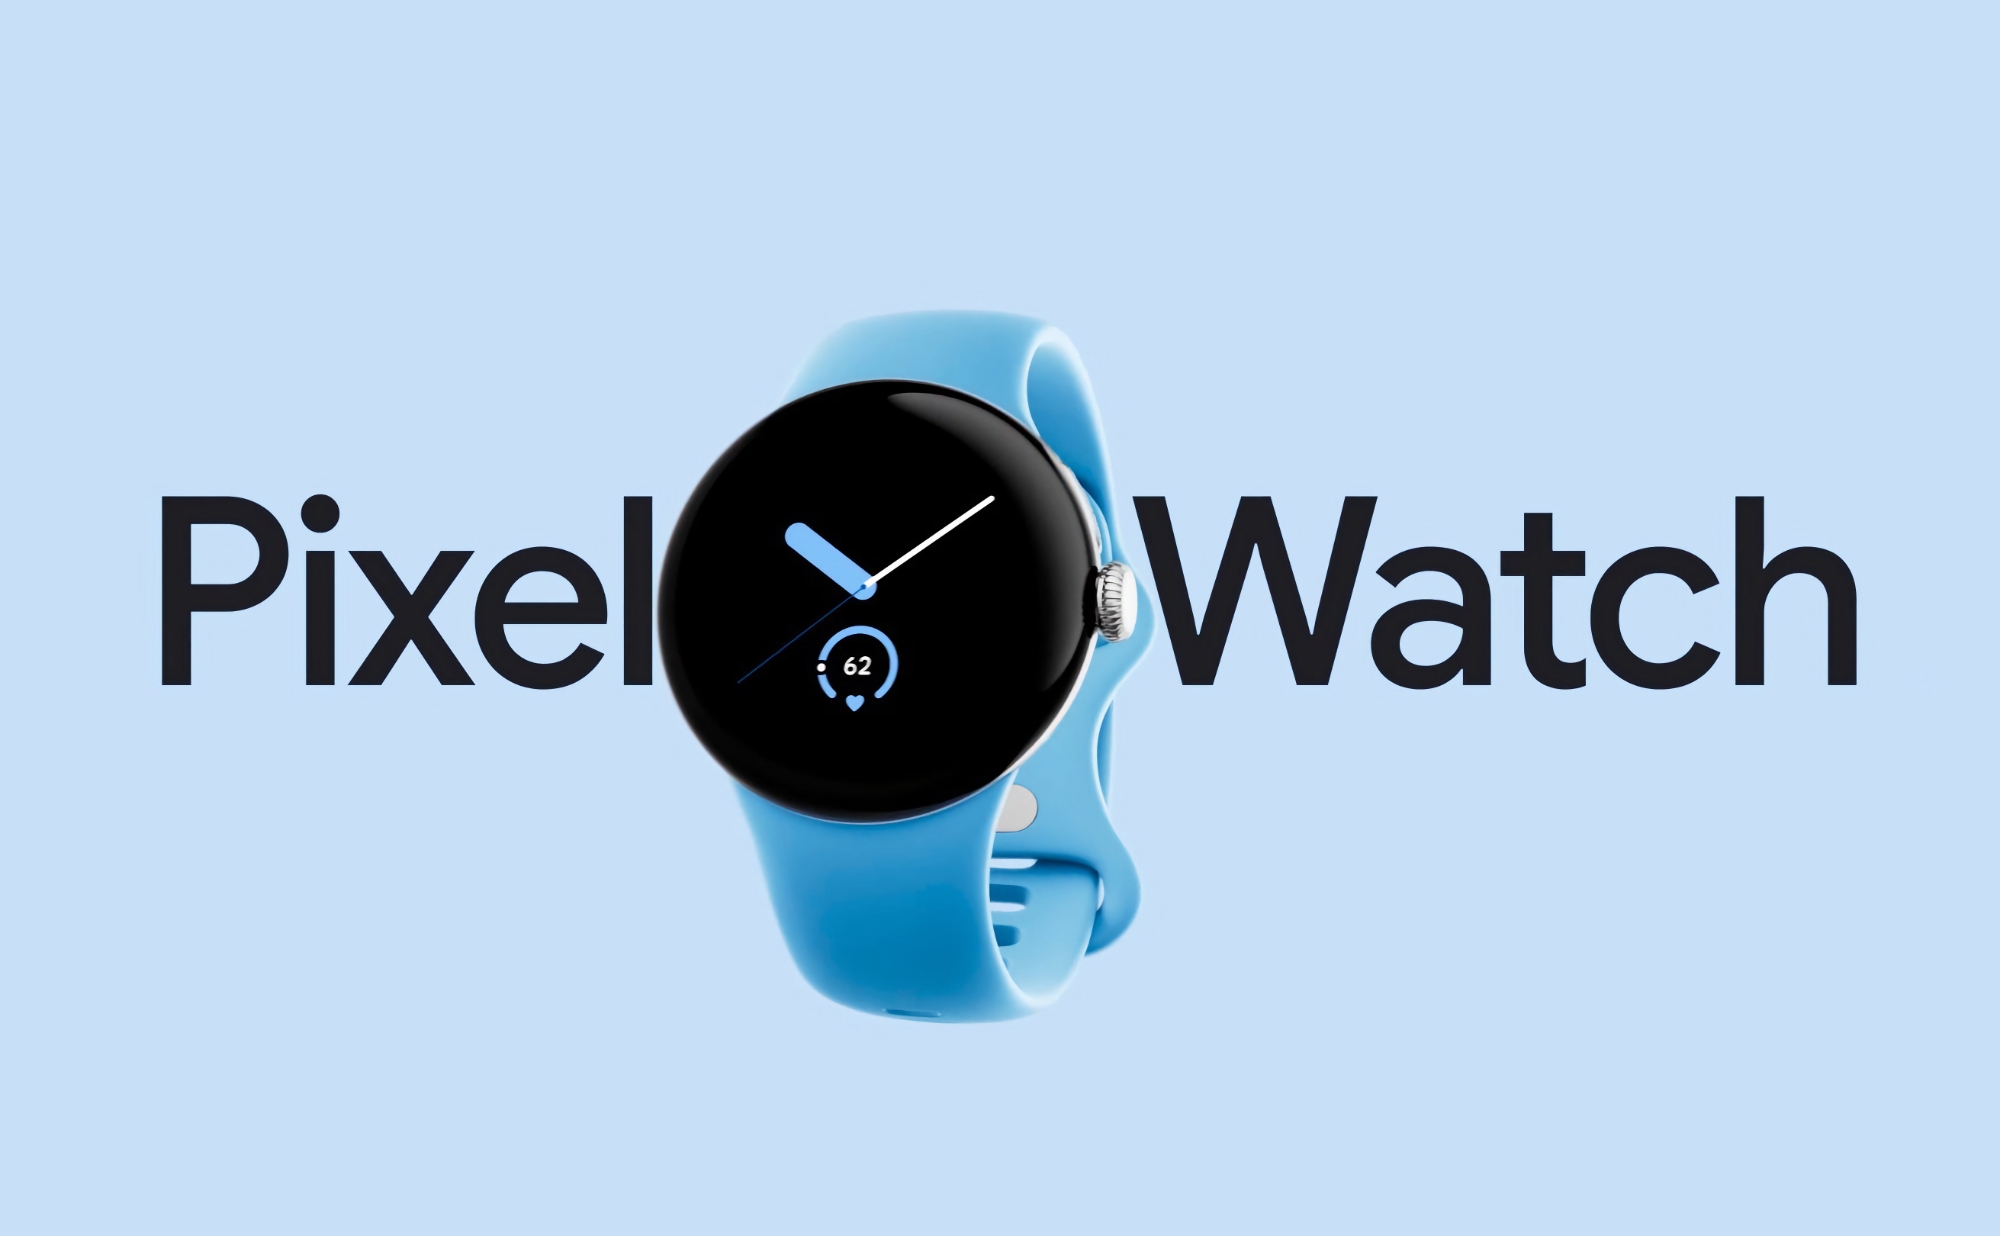 Det originale Google Pixel Watch med Wi-Fi er tilgængeligt på Amazon til en nedsat pris på $ 74